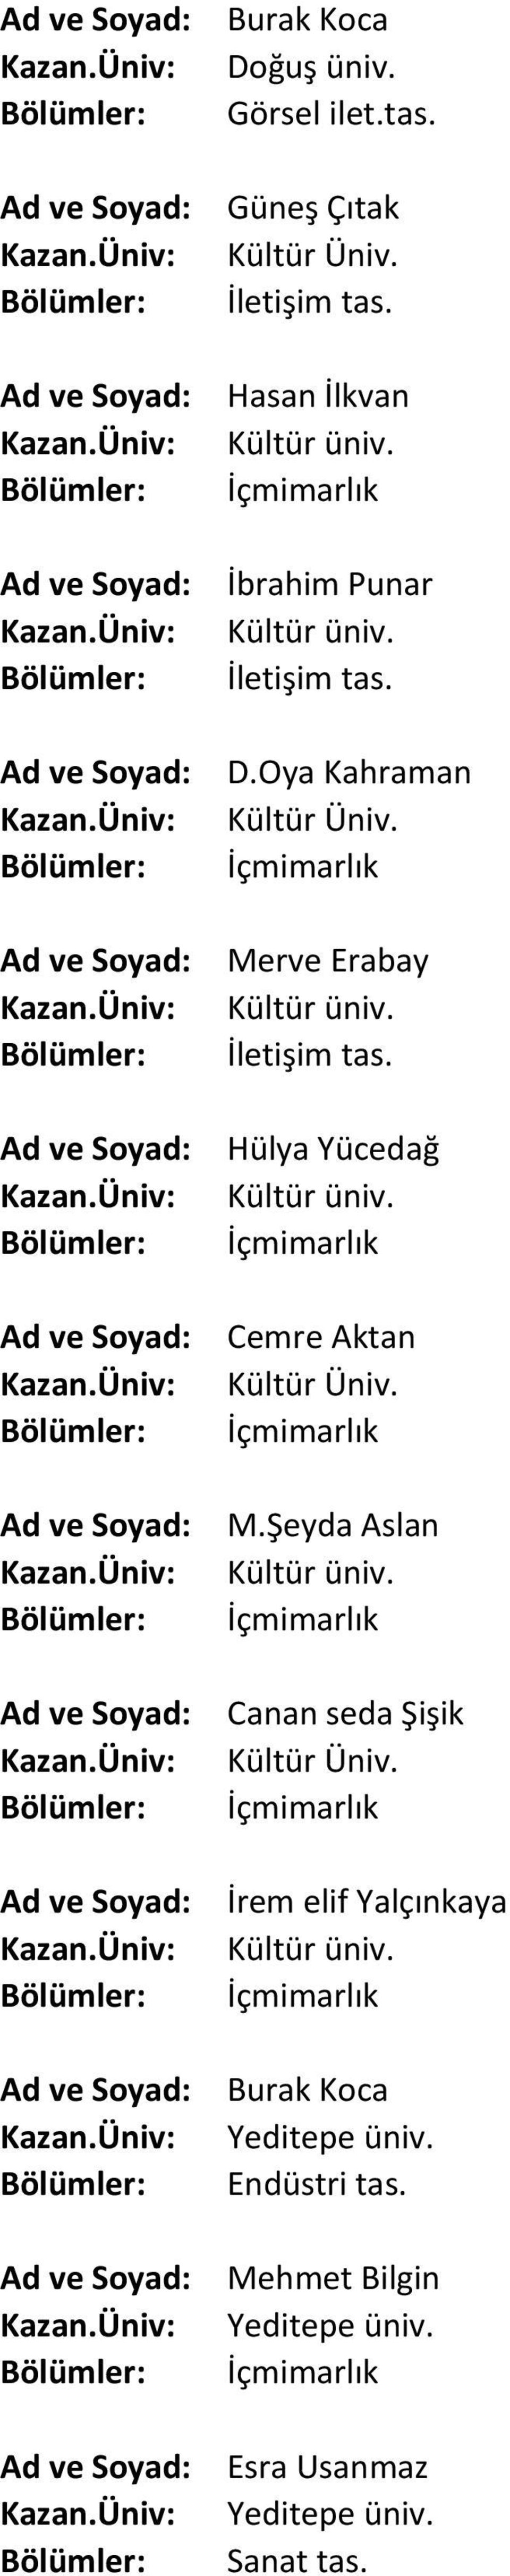 Erabay Hülya Yücedağ Cemre Aktan M.